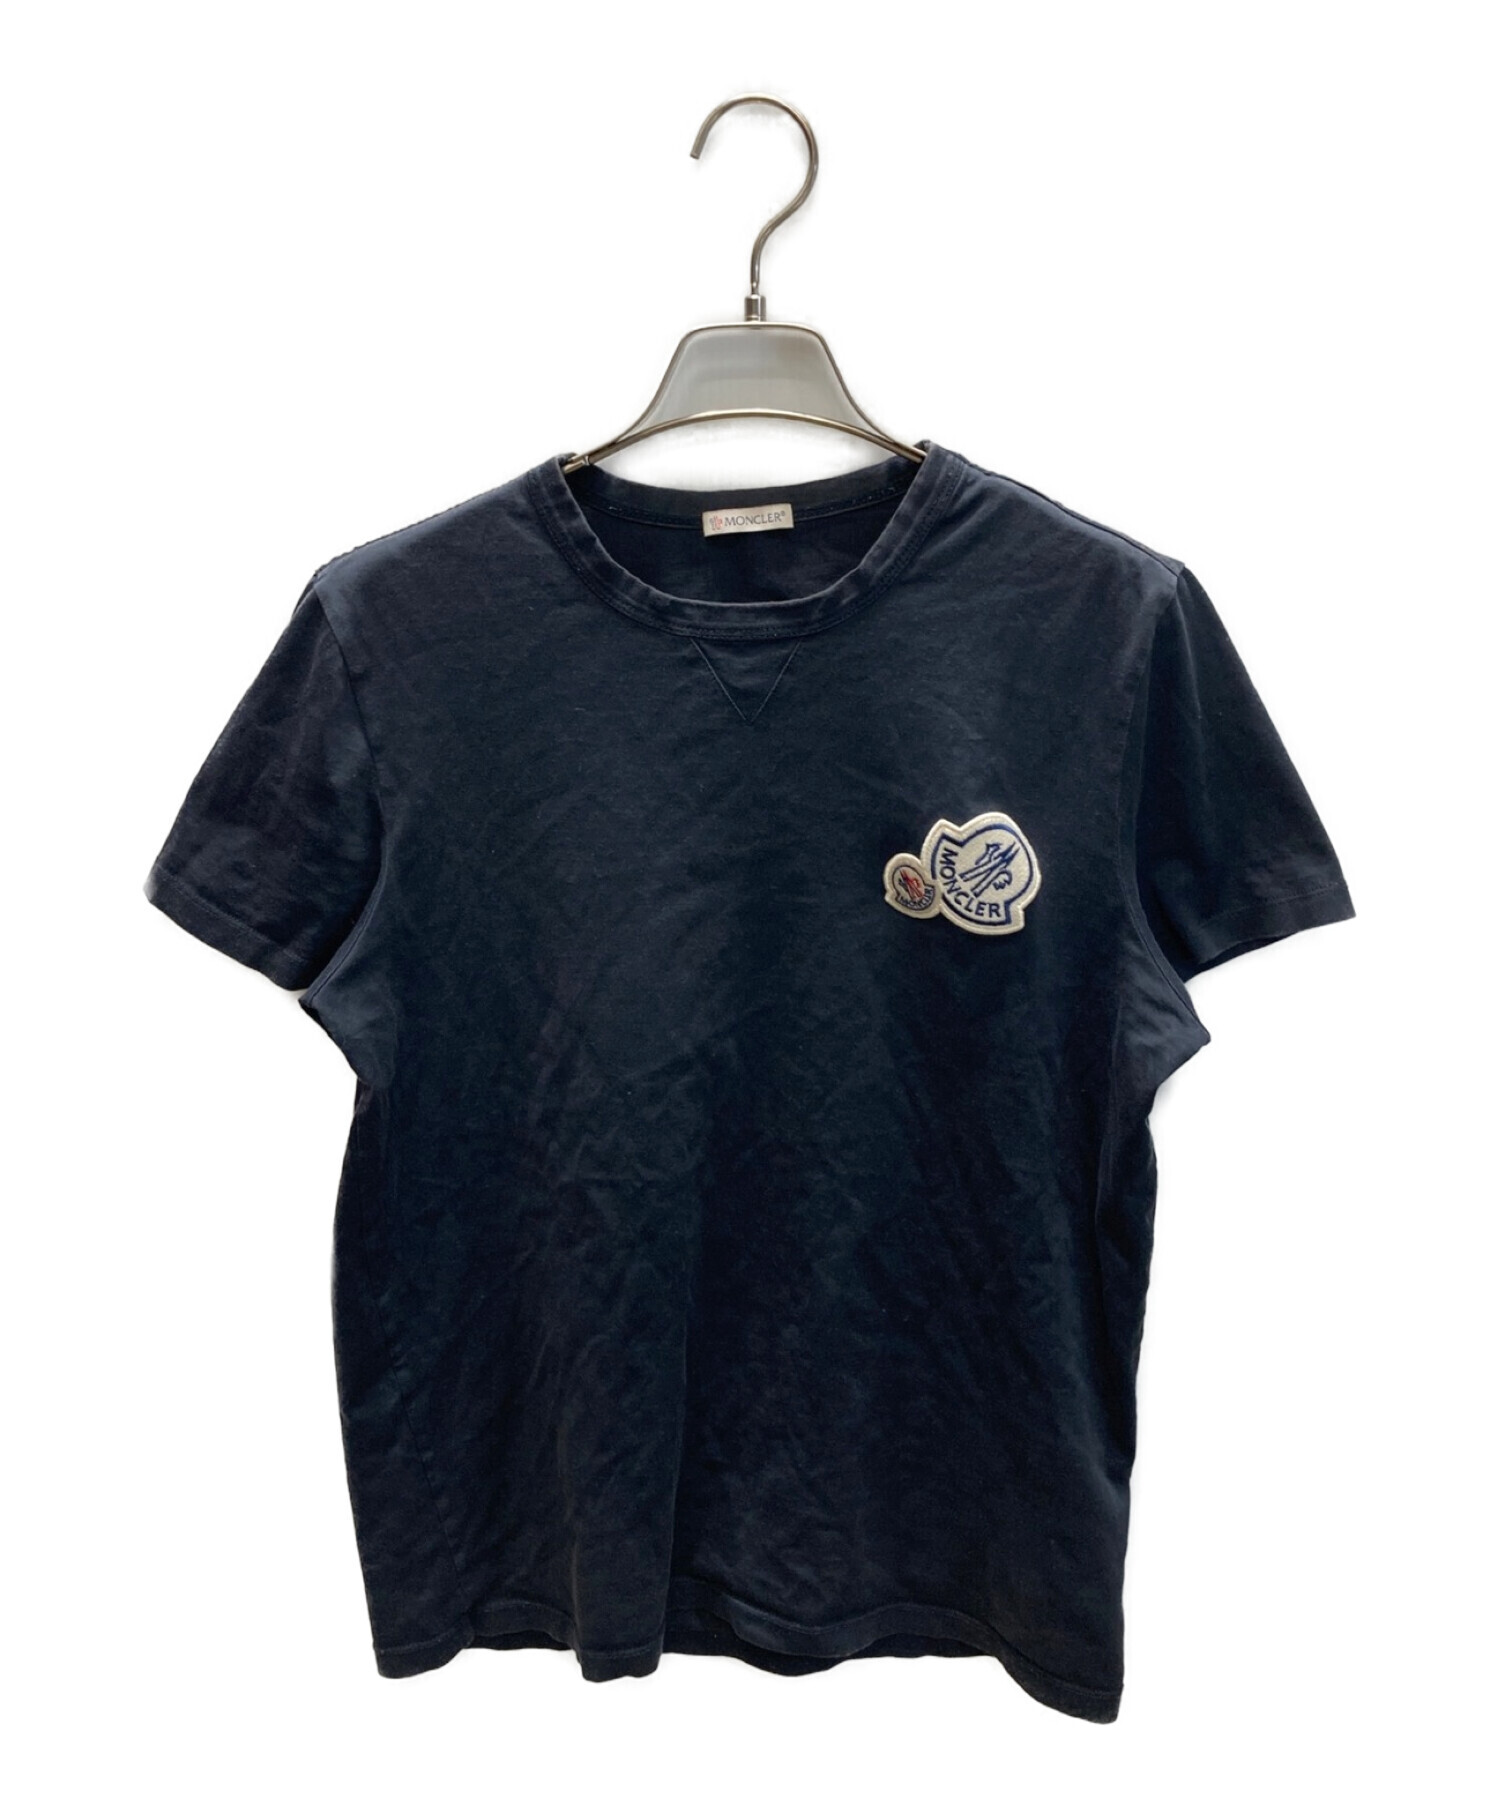 MONCLER (モンクレール) ロゴワッペンTシャツ ネイビー サイズ:S